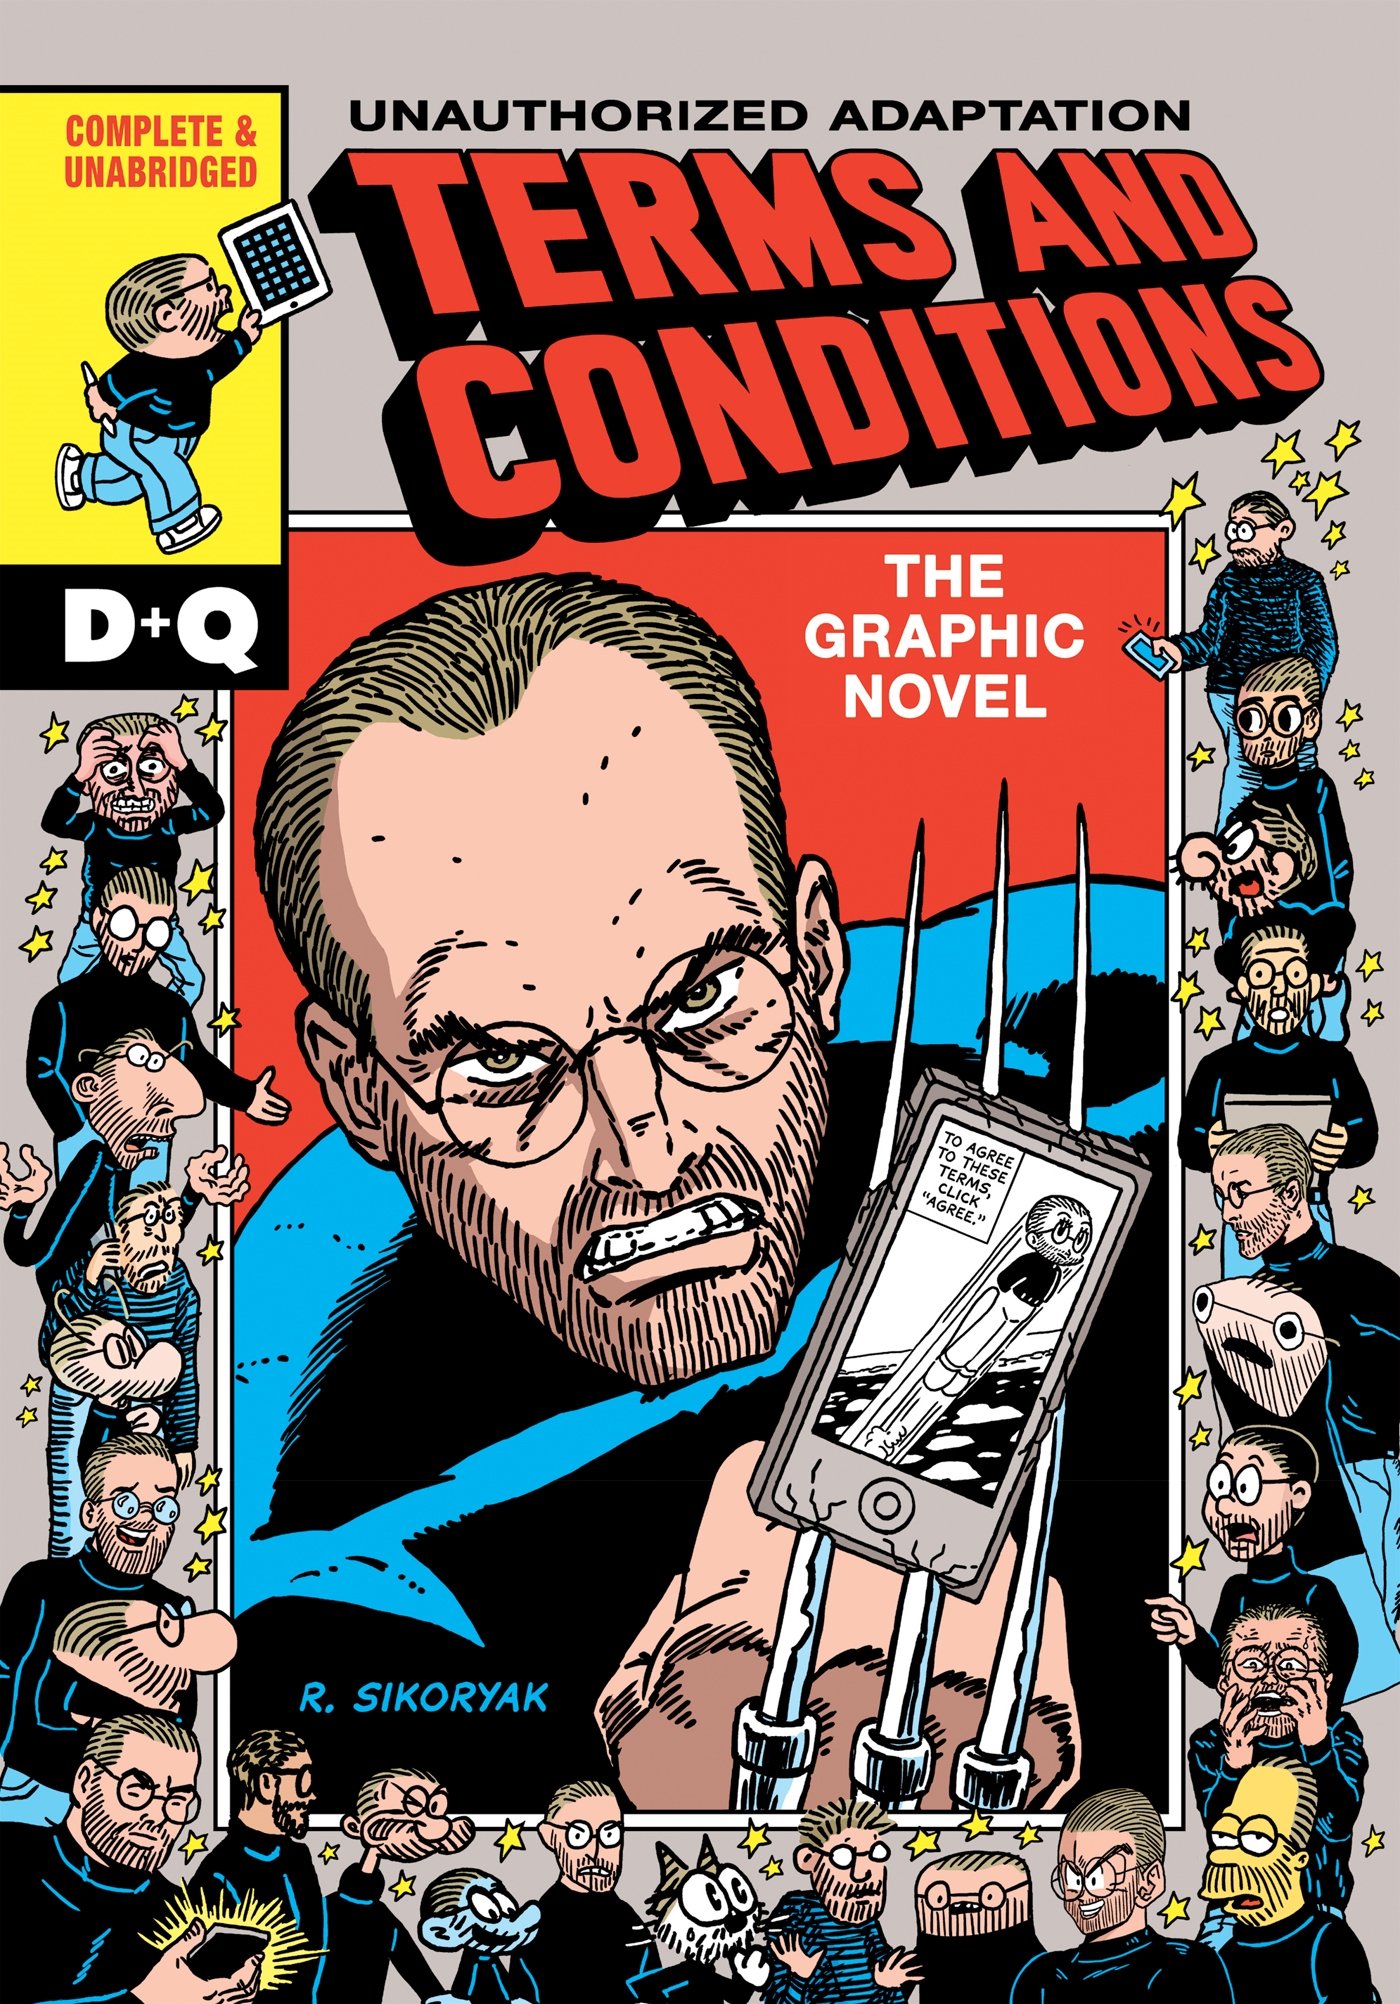 Couverture d'une bande dessinée appelée en anglais 'Conditions générales d'utilisation - la bande dessinée' et montrant Steve Jobs en Wolwerine, transperçant un téléphone avec ses griffes.  